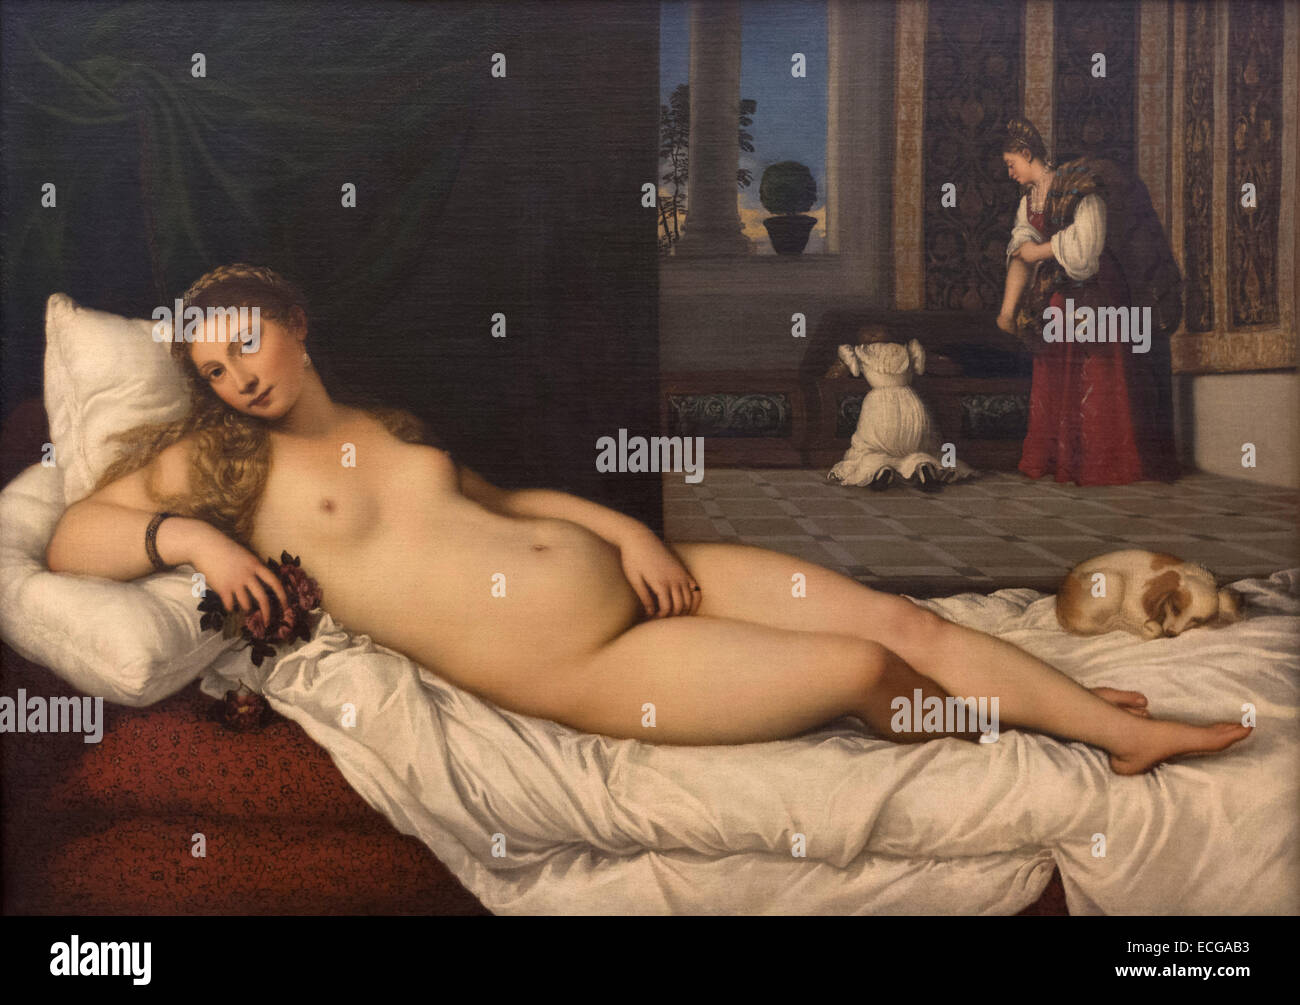 Florenz. Italien. Galerie der Uffizien. Die Venus von Urbino (Ca. 1534) Gemälde von Tizian. Tiziano Vecellio (1488-1576) Stockfoto